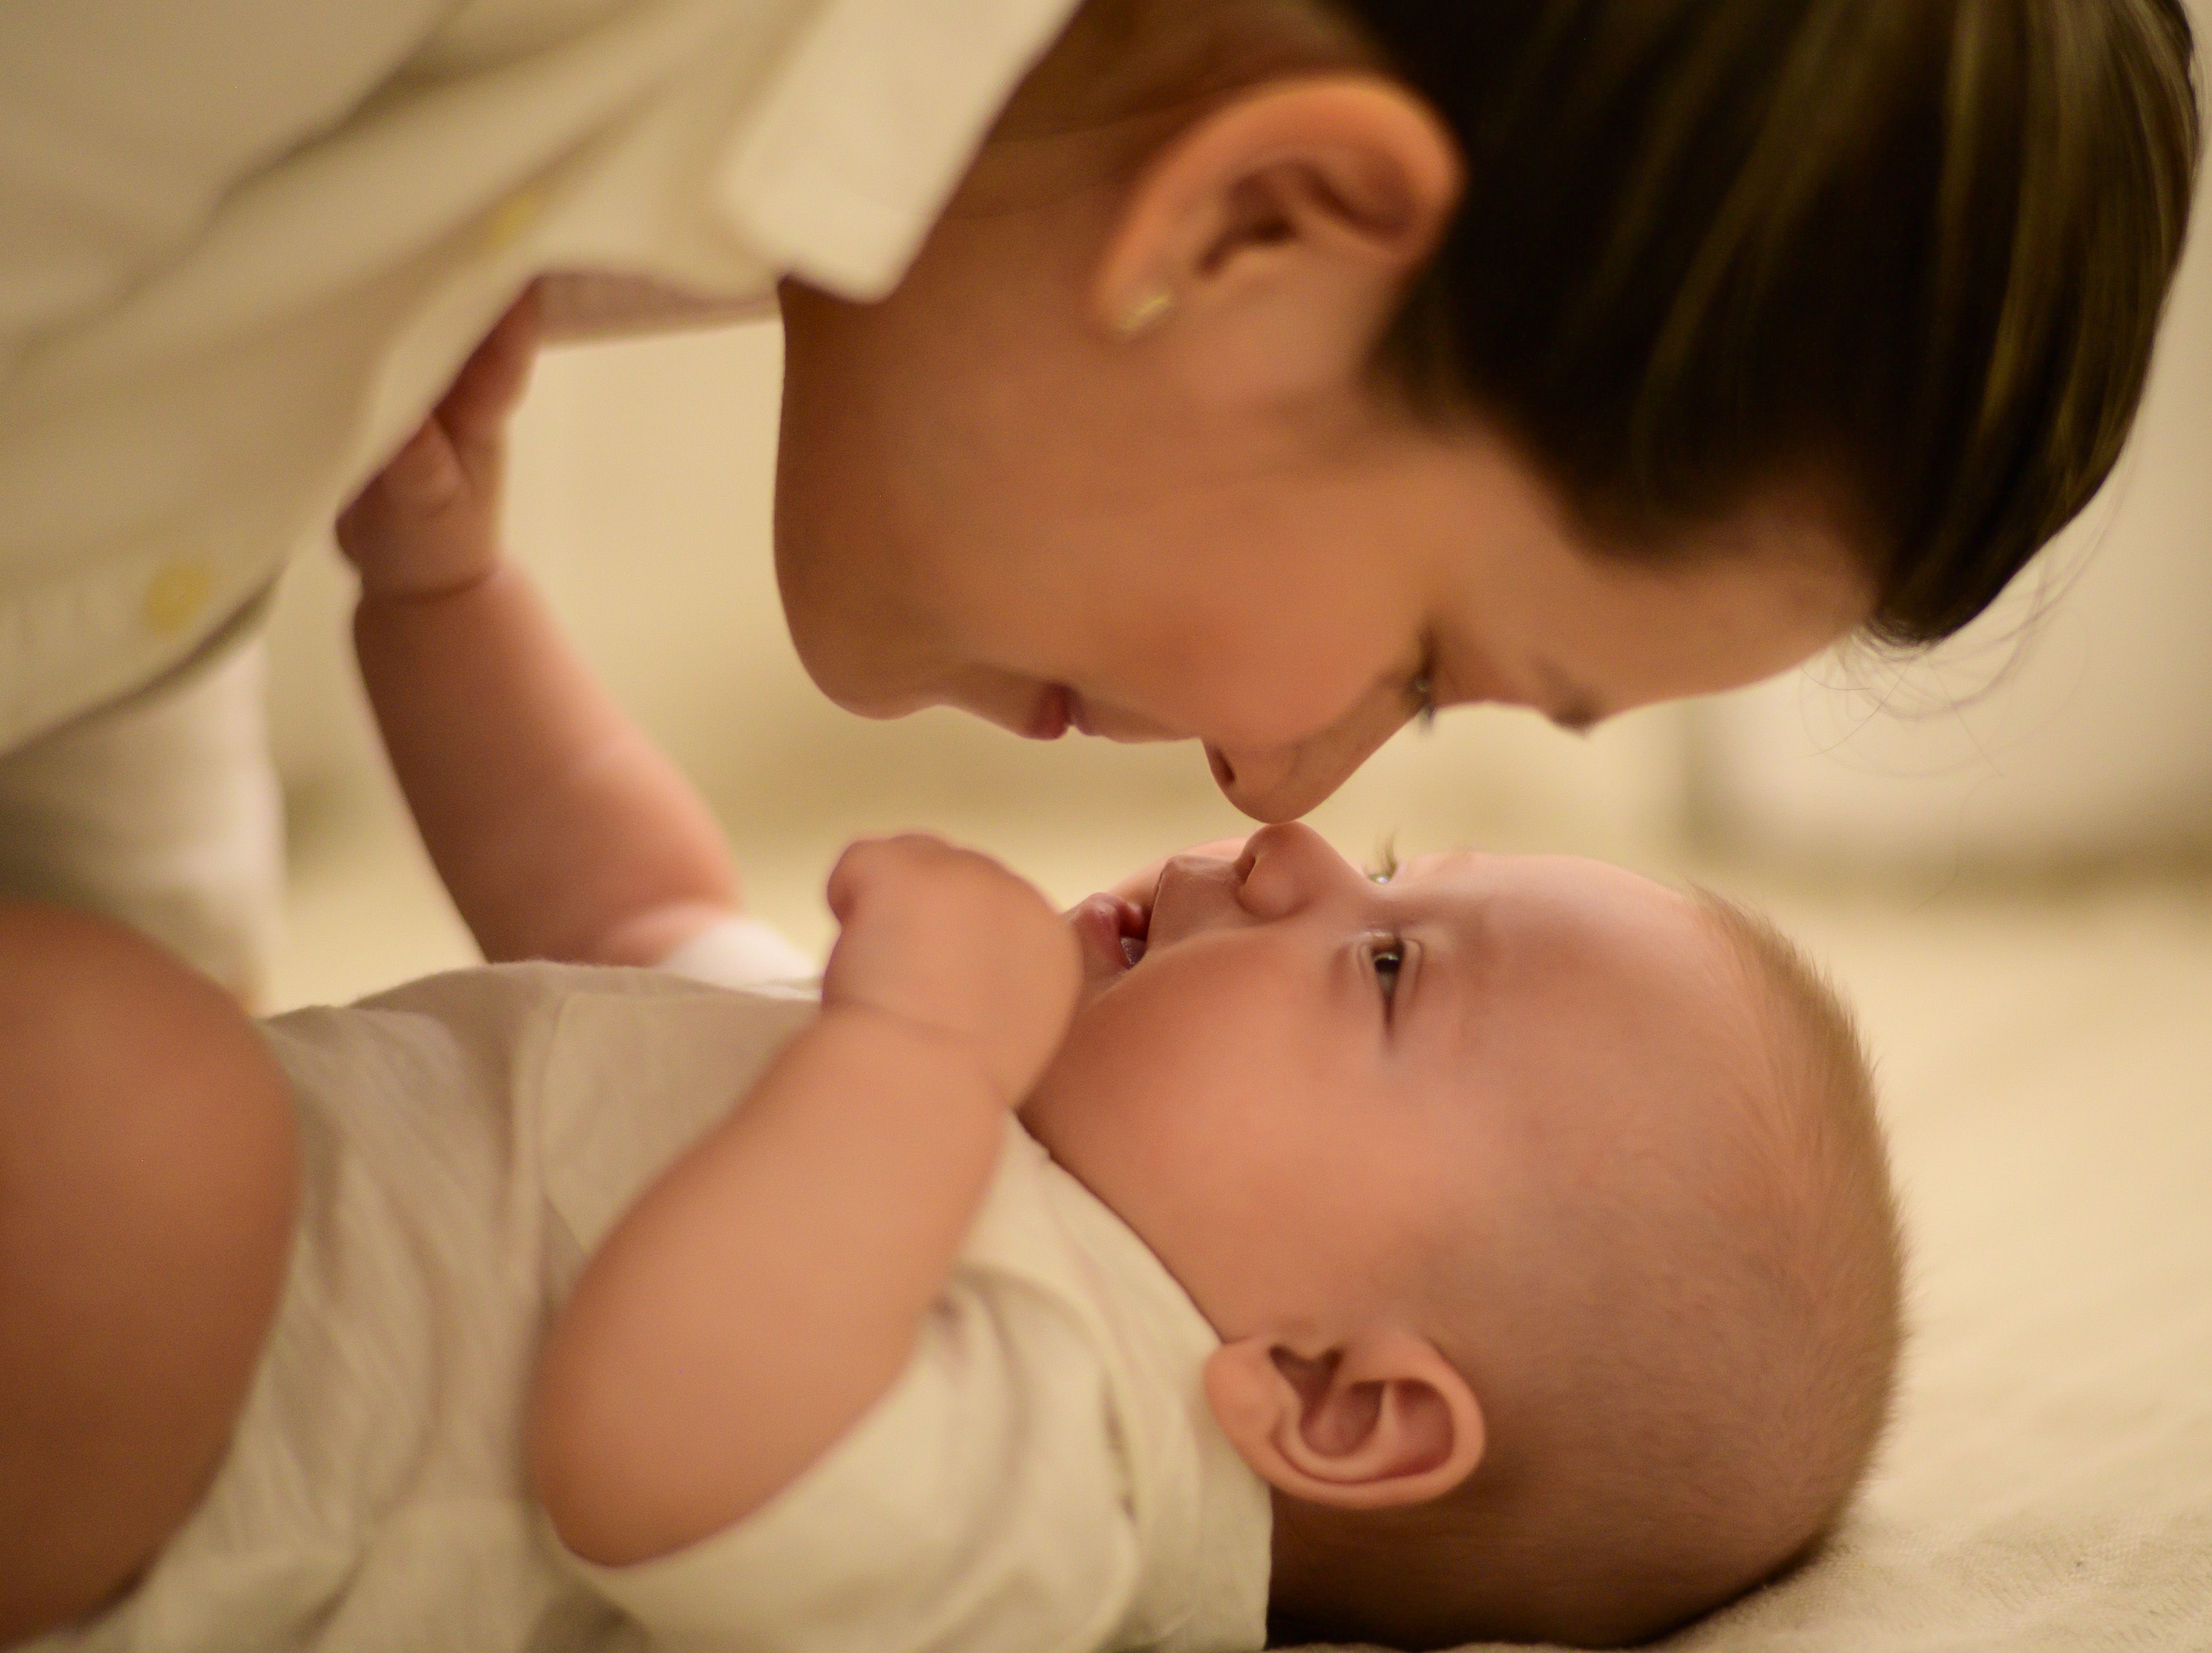 Postpartum Self Care